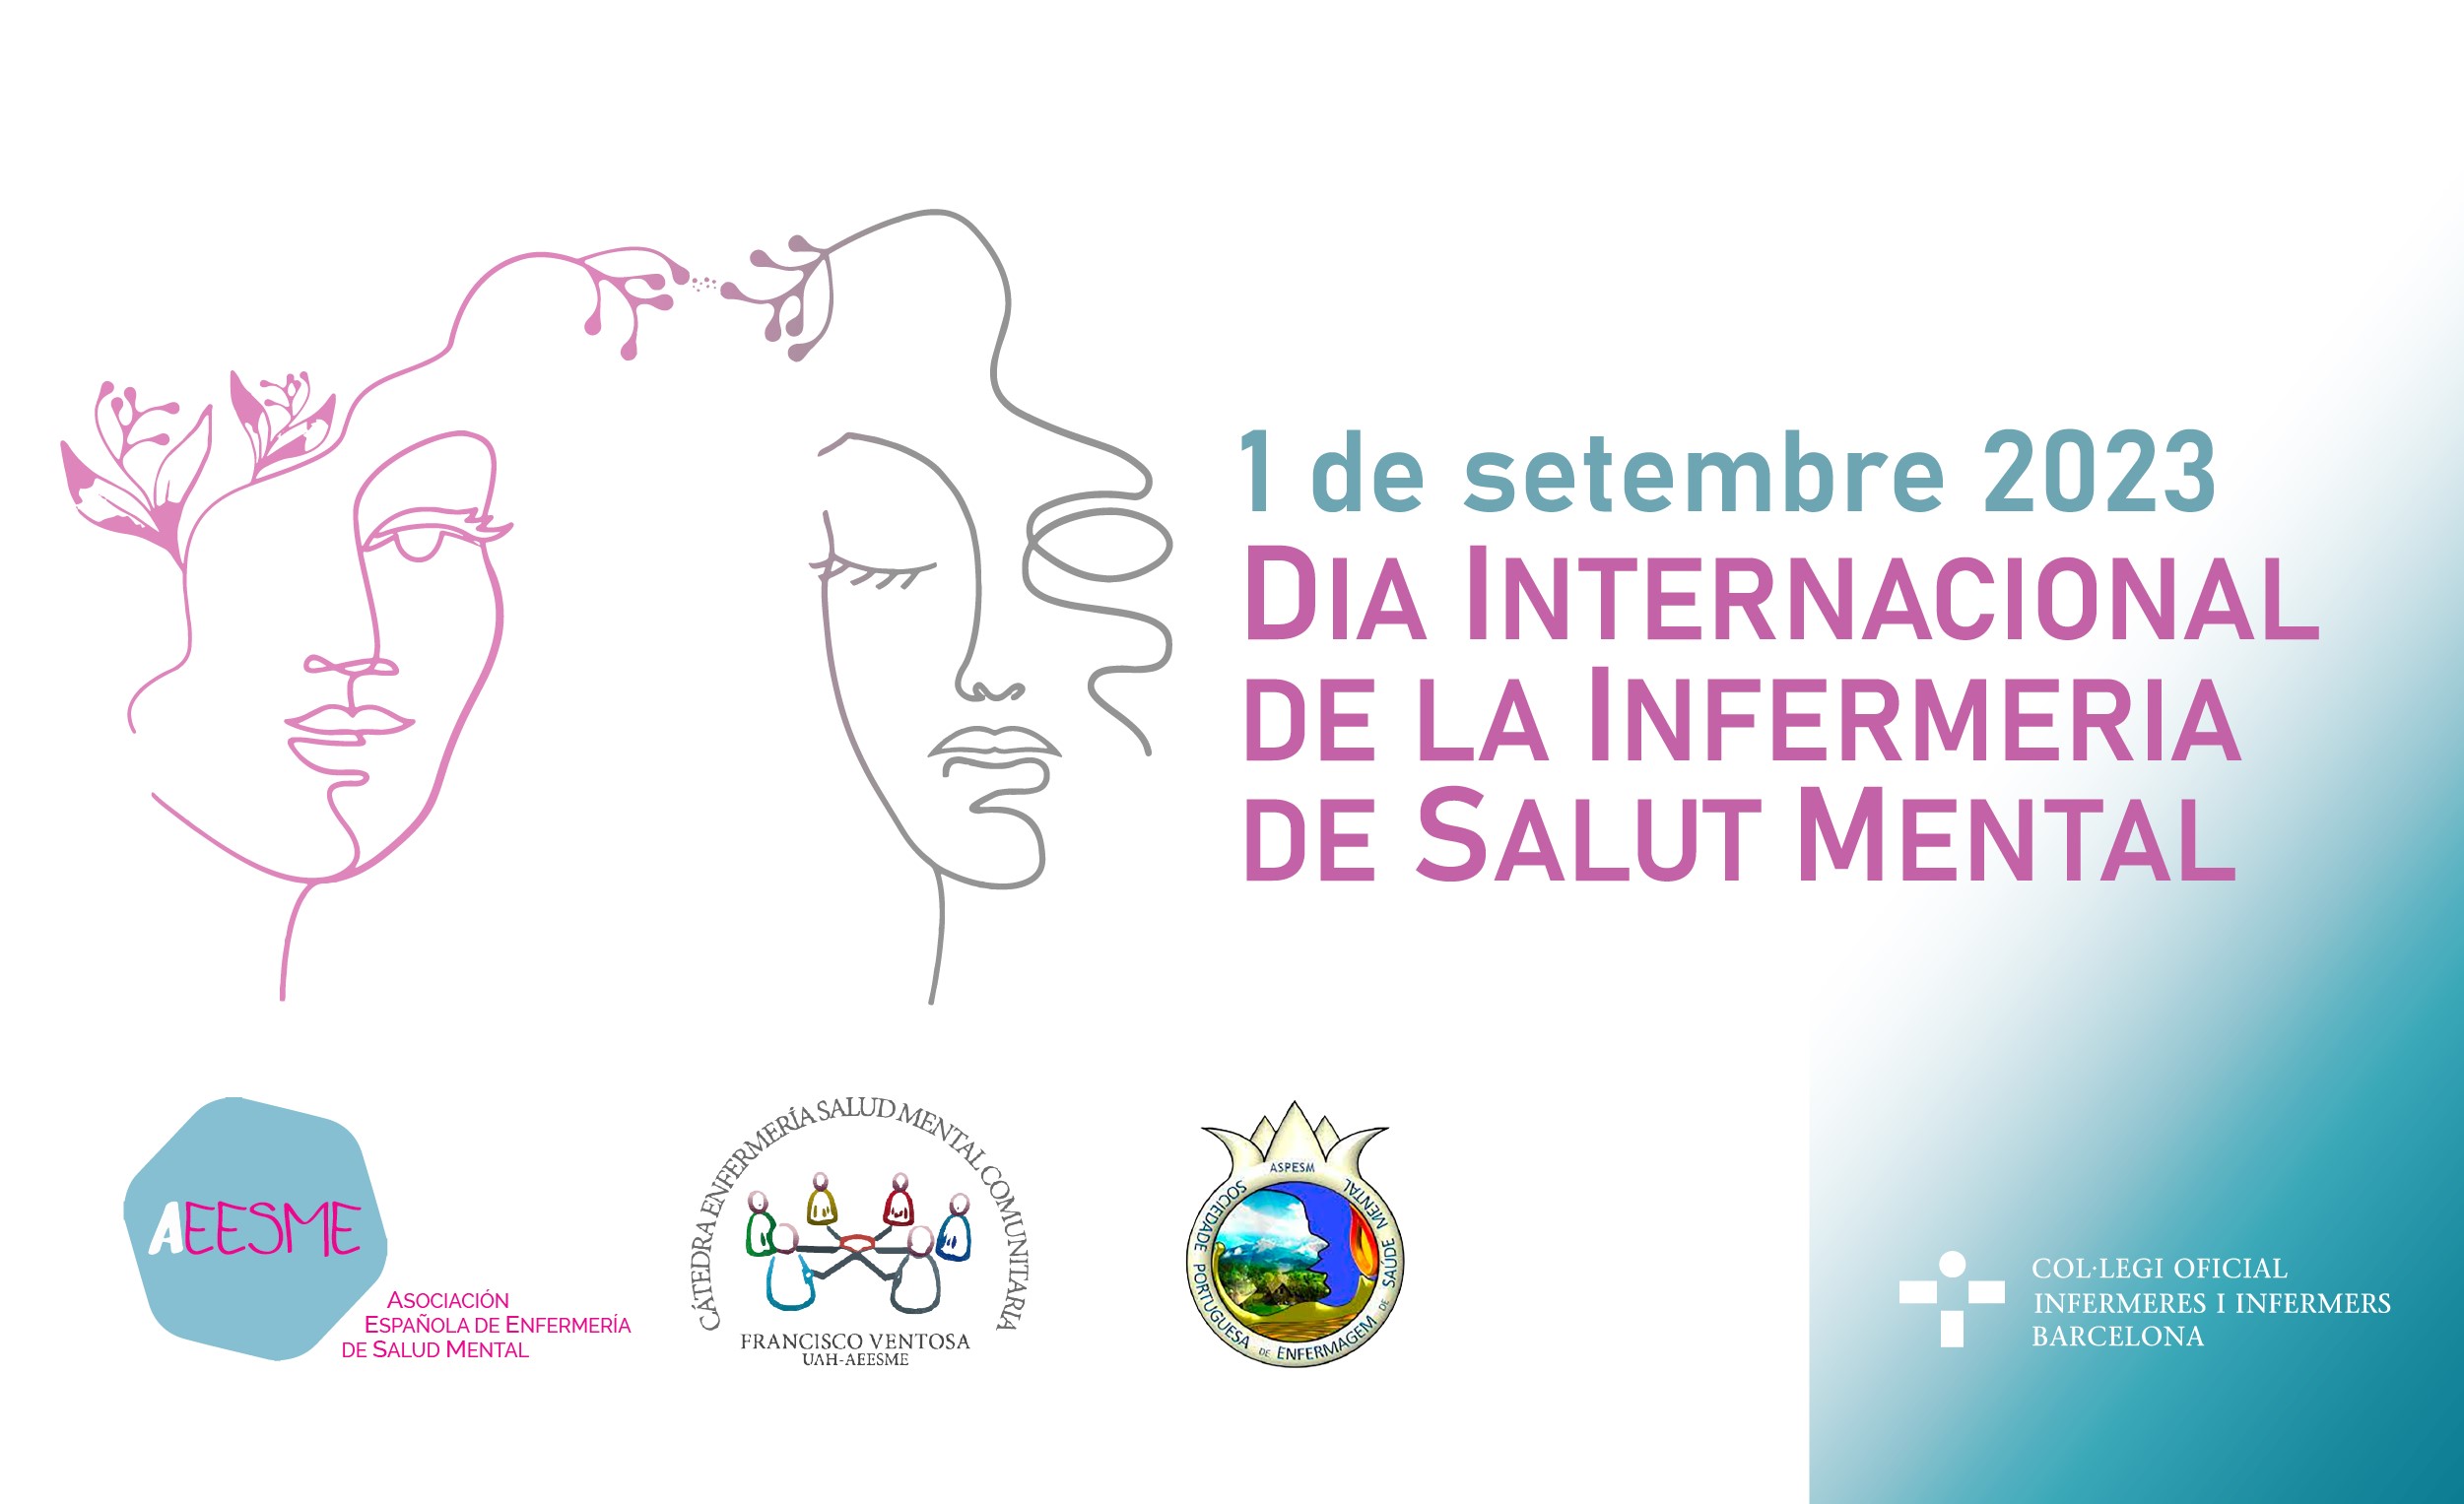 El Col·legi Oficial d'Infermeres i Infermers de Barcelona (COIB) s'adhereix un any més a la celebració del Dia Internacional de la Infermeria de Salut Mental, el divendres, dia 1 de setembre, que organitza AEESME i ASPESM.